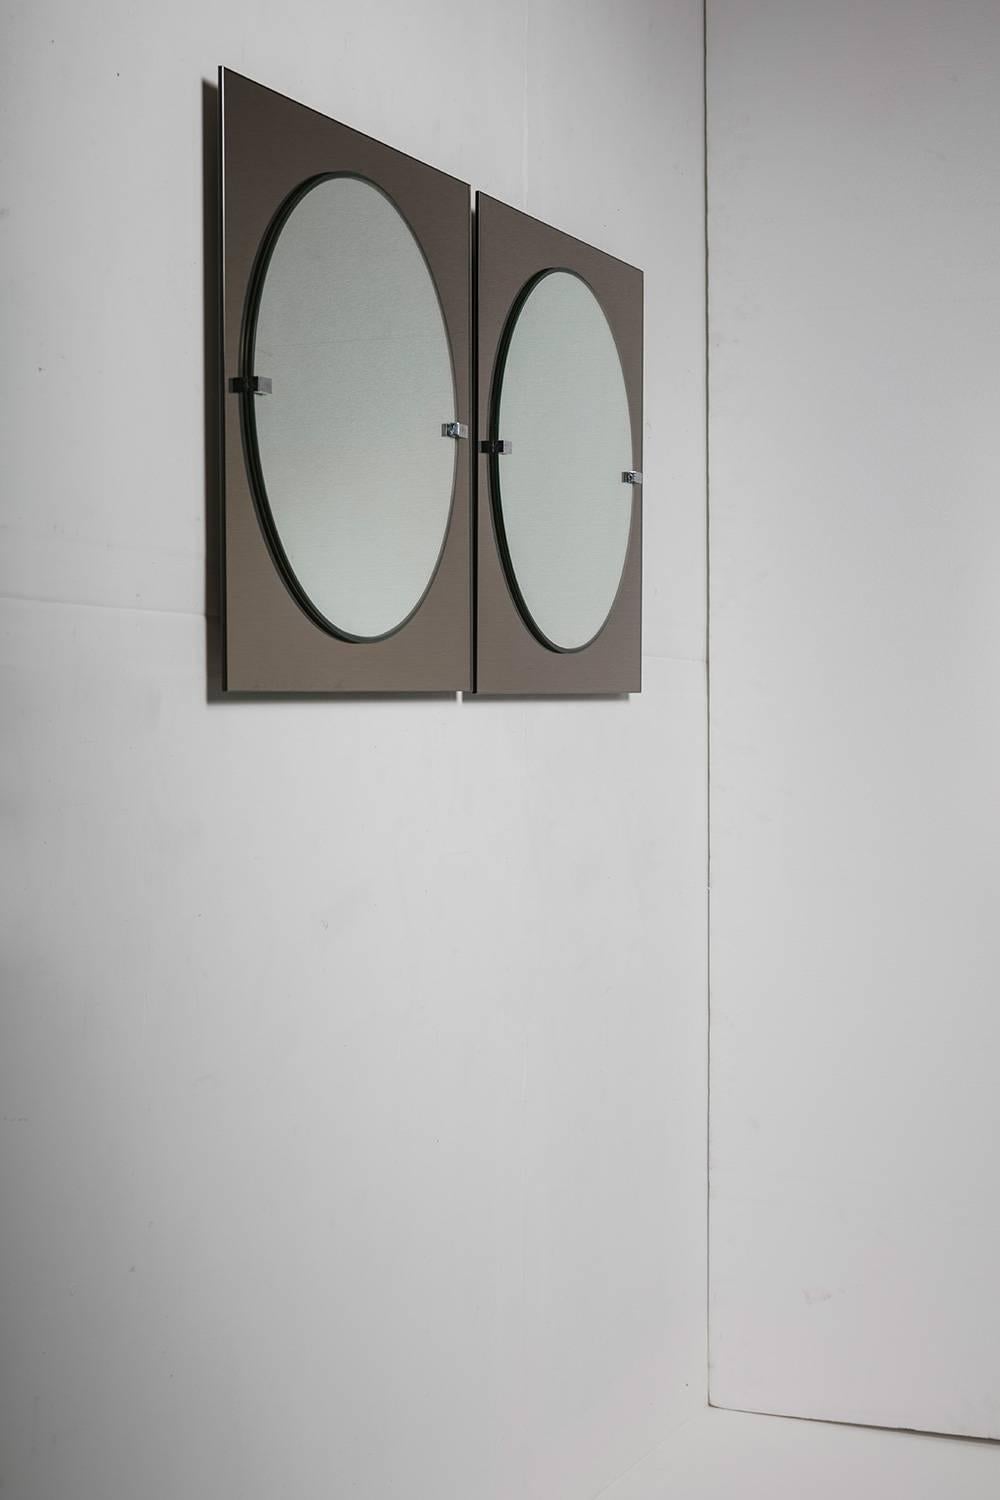 Miroir mural simple de Veca.
Deux couches de verre différentes sont reliées par deux éléments chromés.
Veuillez noter que la liste se réfère à une seule pièce.